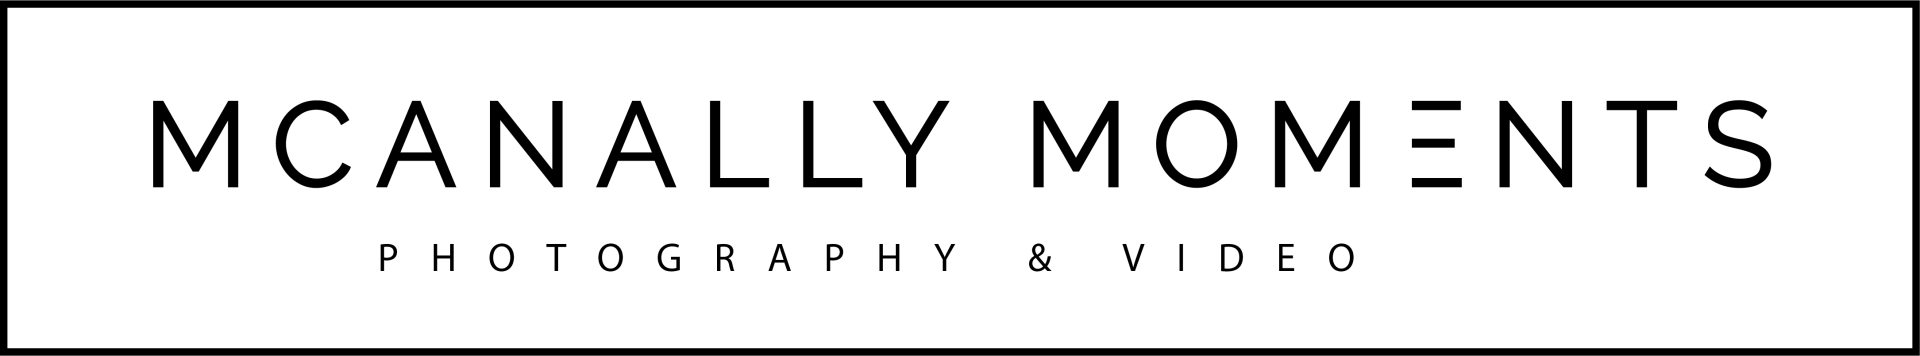 mcanally moments logo